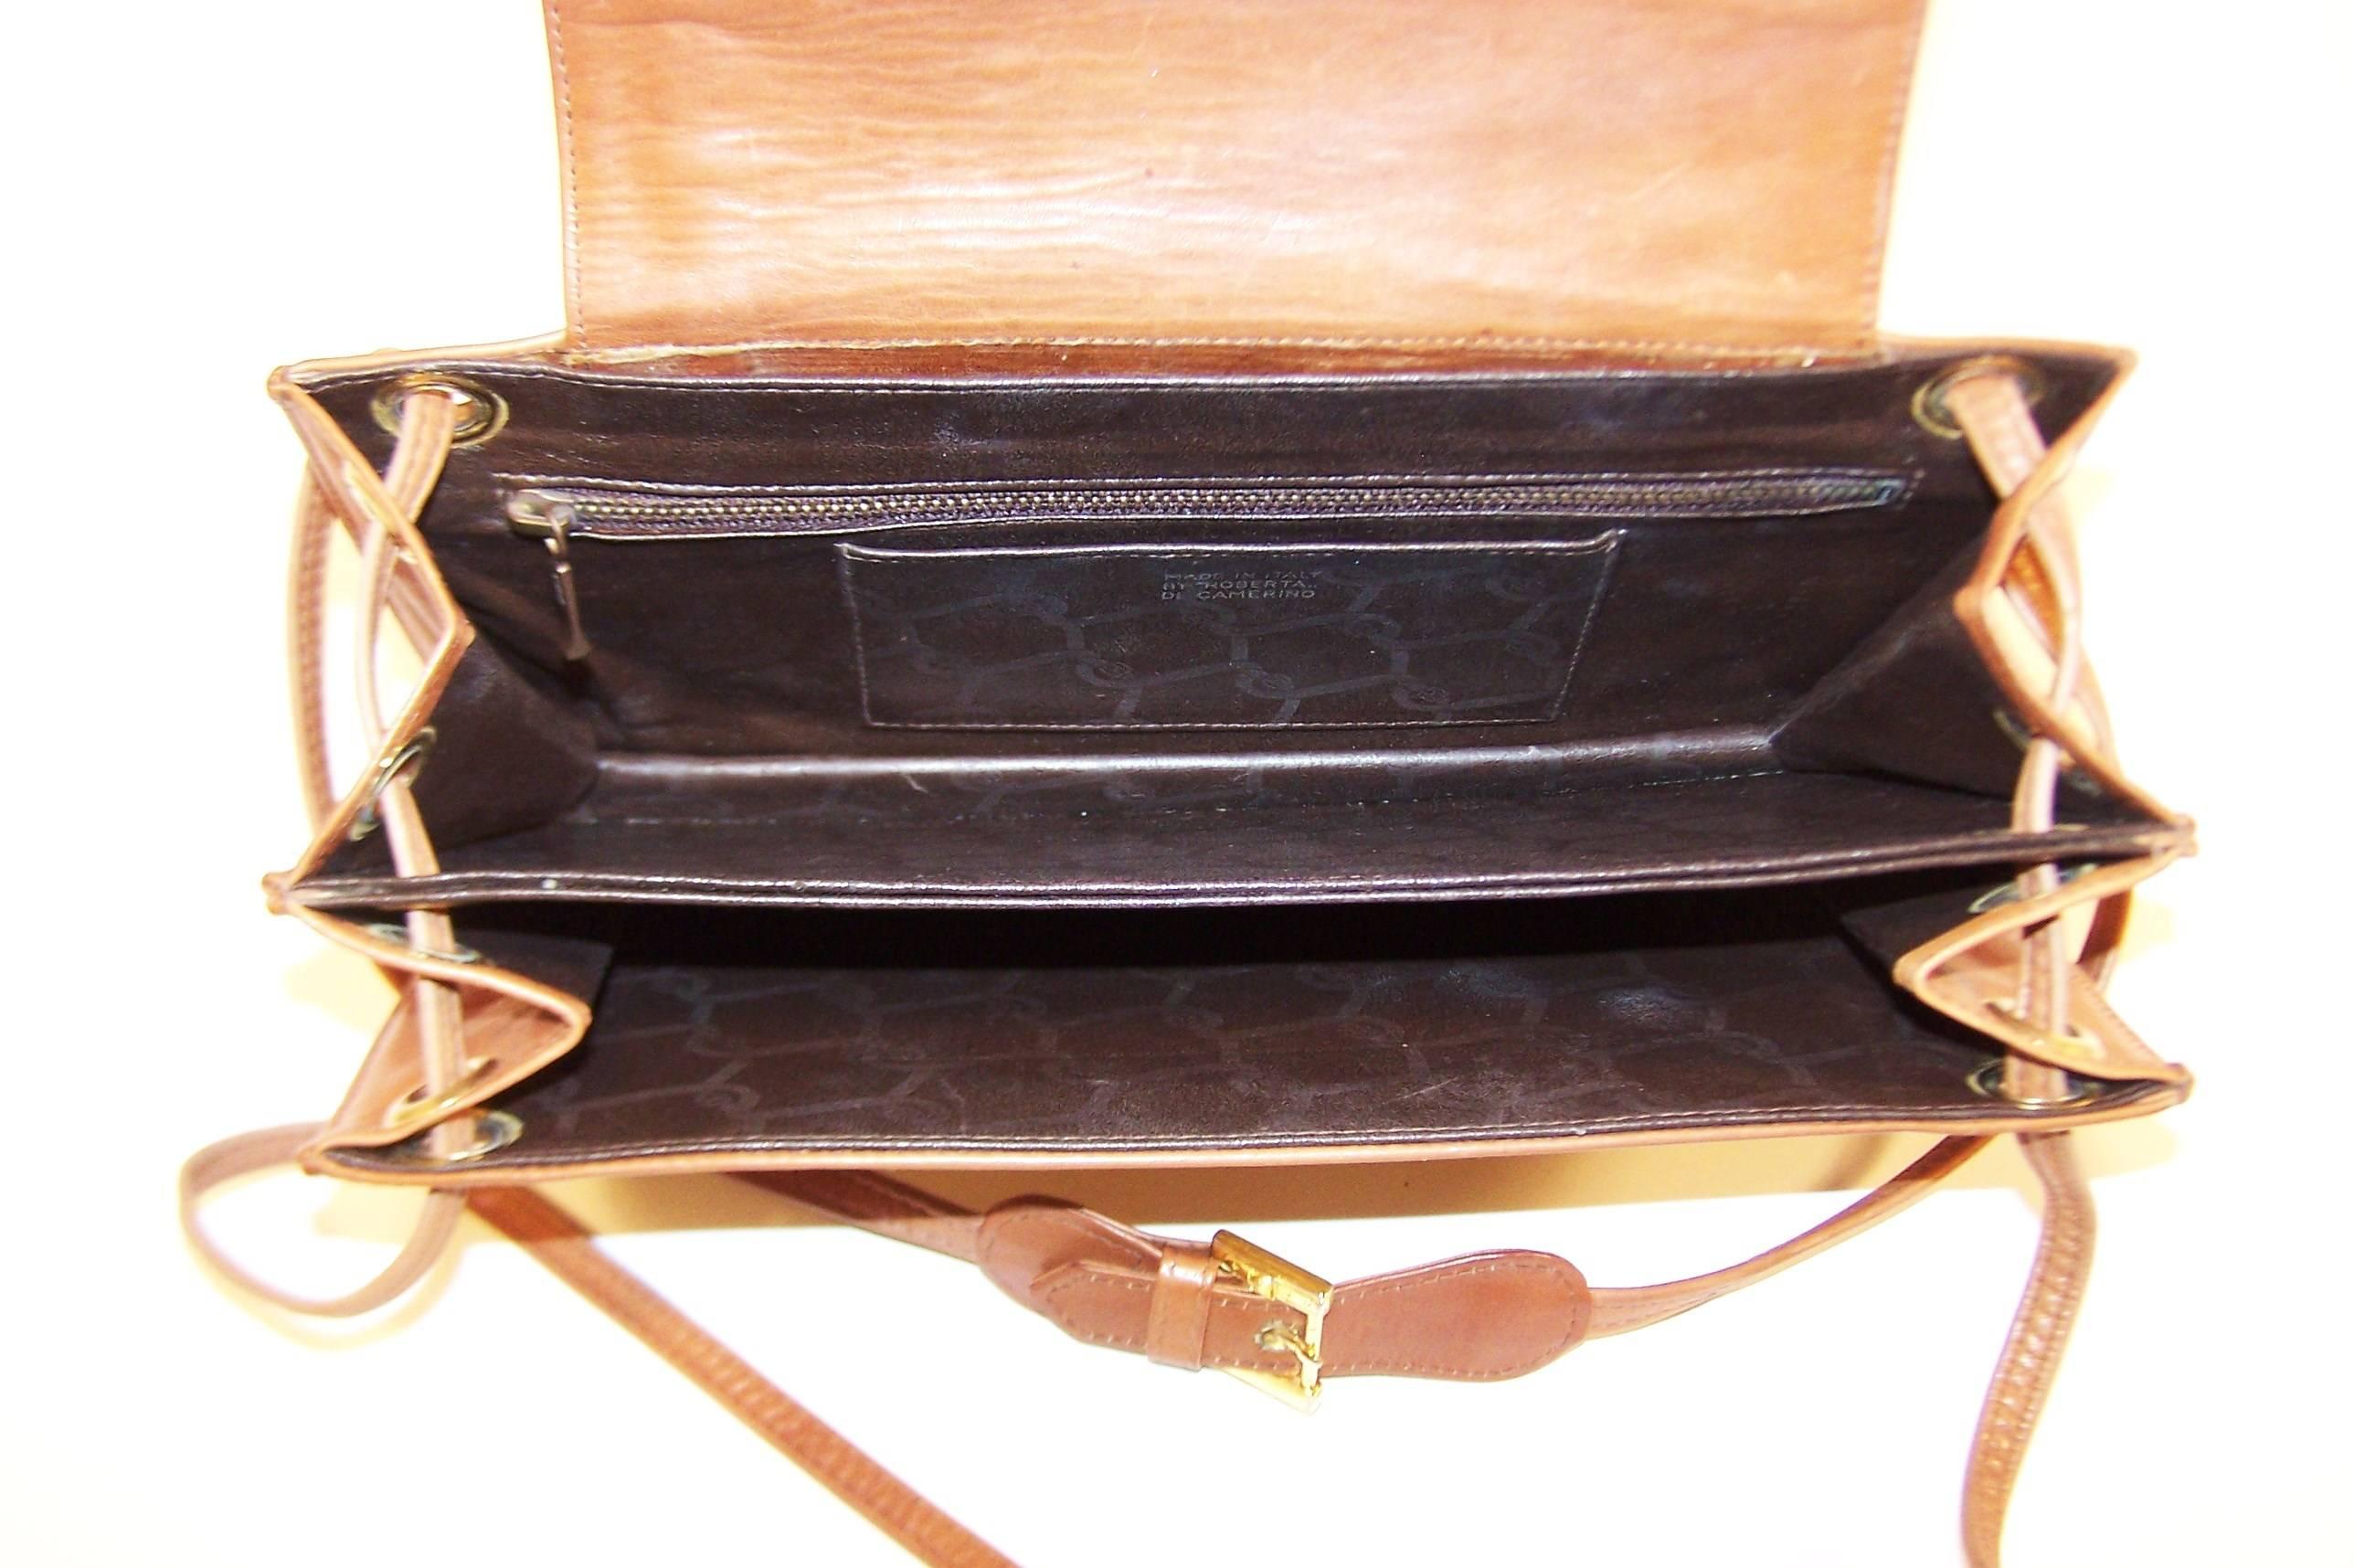 C.1970 Roberta Di Camerino Full Leather Envelope Style Handbag 3